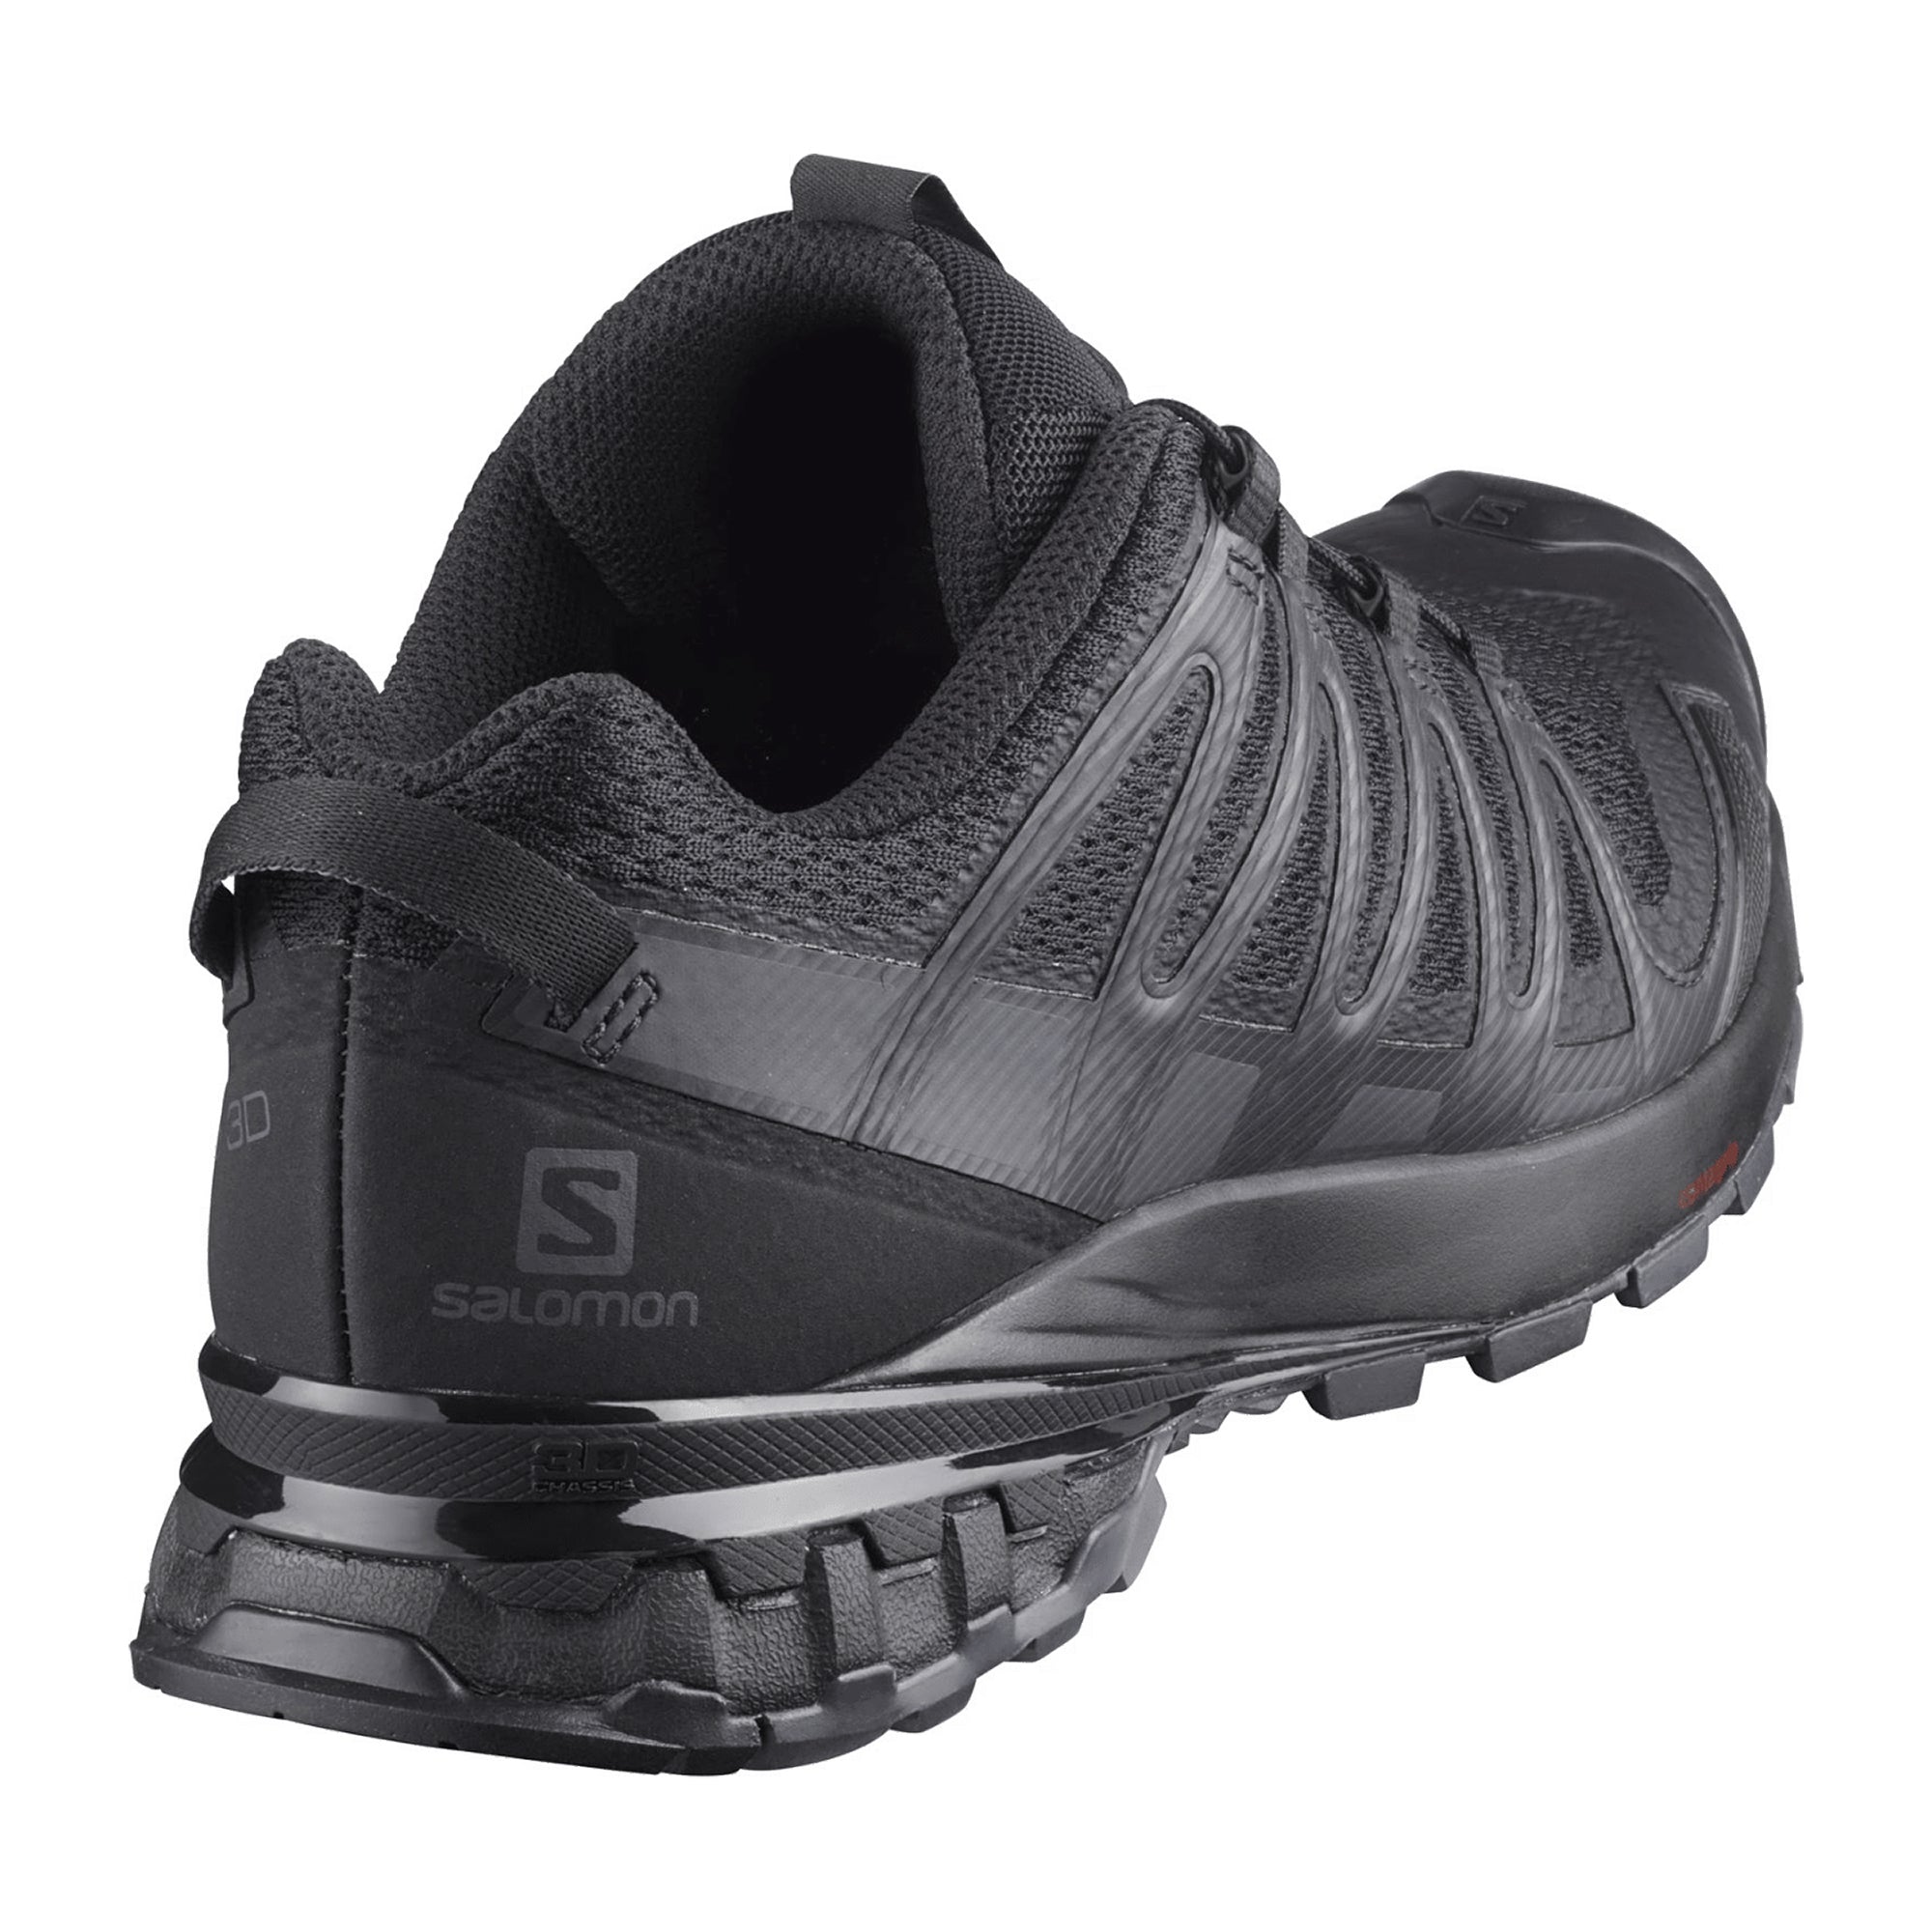 Salomon DA shoes XA PRO 3D v8 W Bk/PHANTOM for women, black